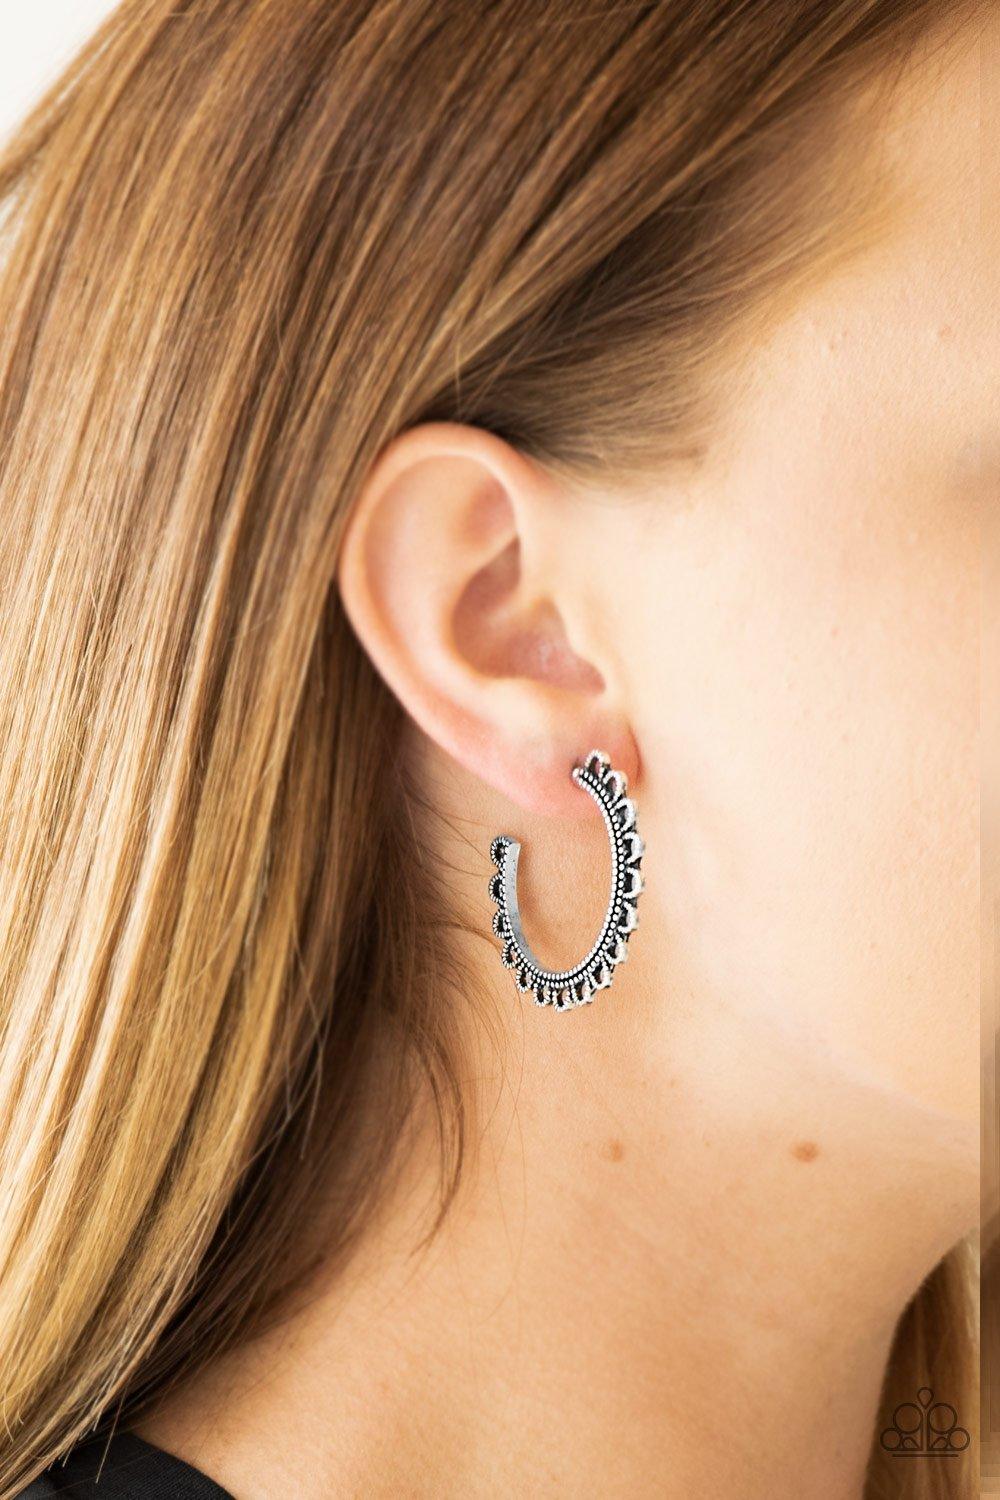 Bohemian Bliss Silver Earrings - Jewelry by Bretta - Jewelry by Bretta